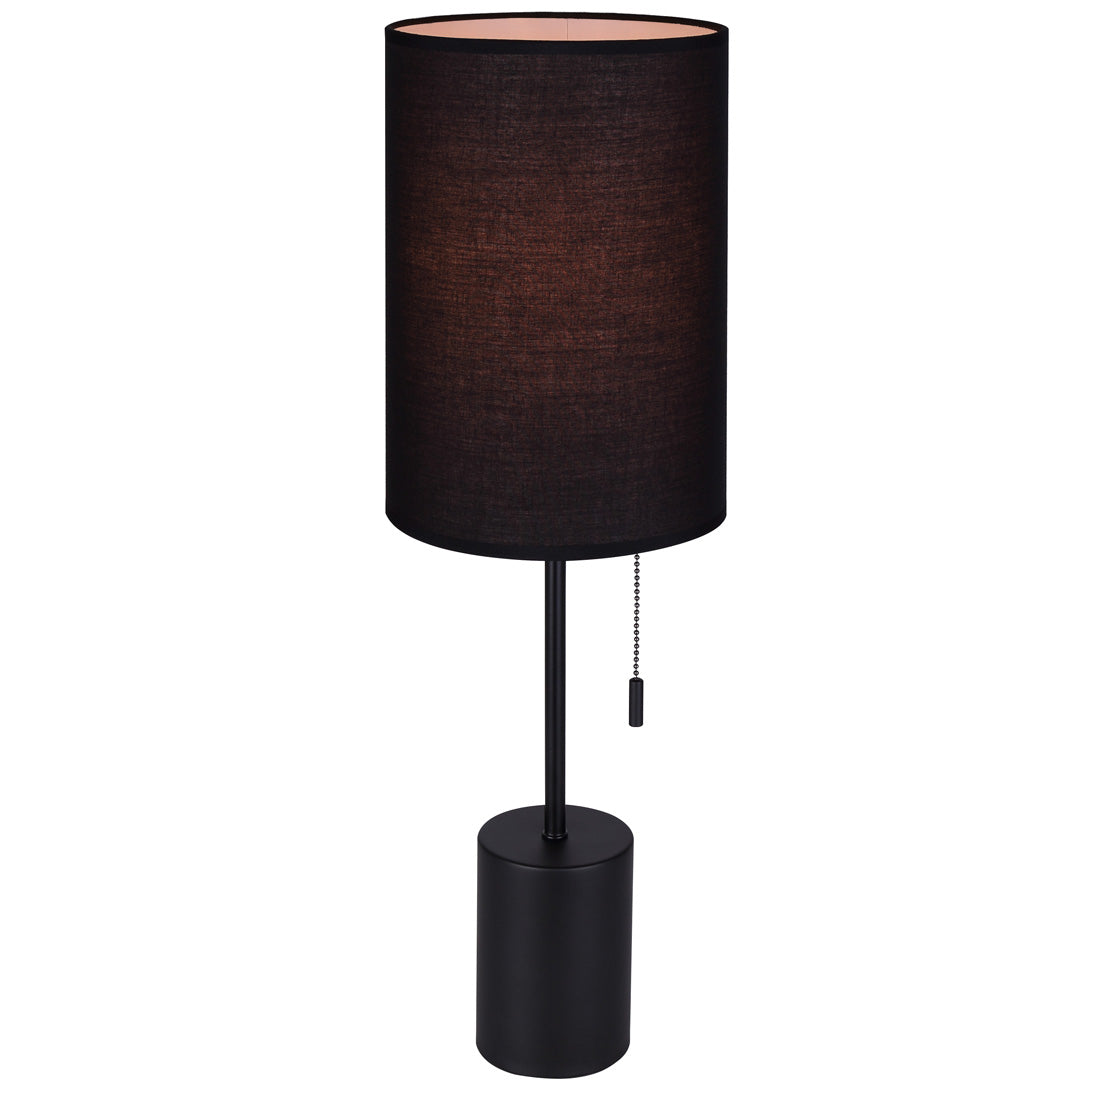 FLINT Lampe sur table Noir - ITL1164A23BK | CANARM